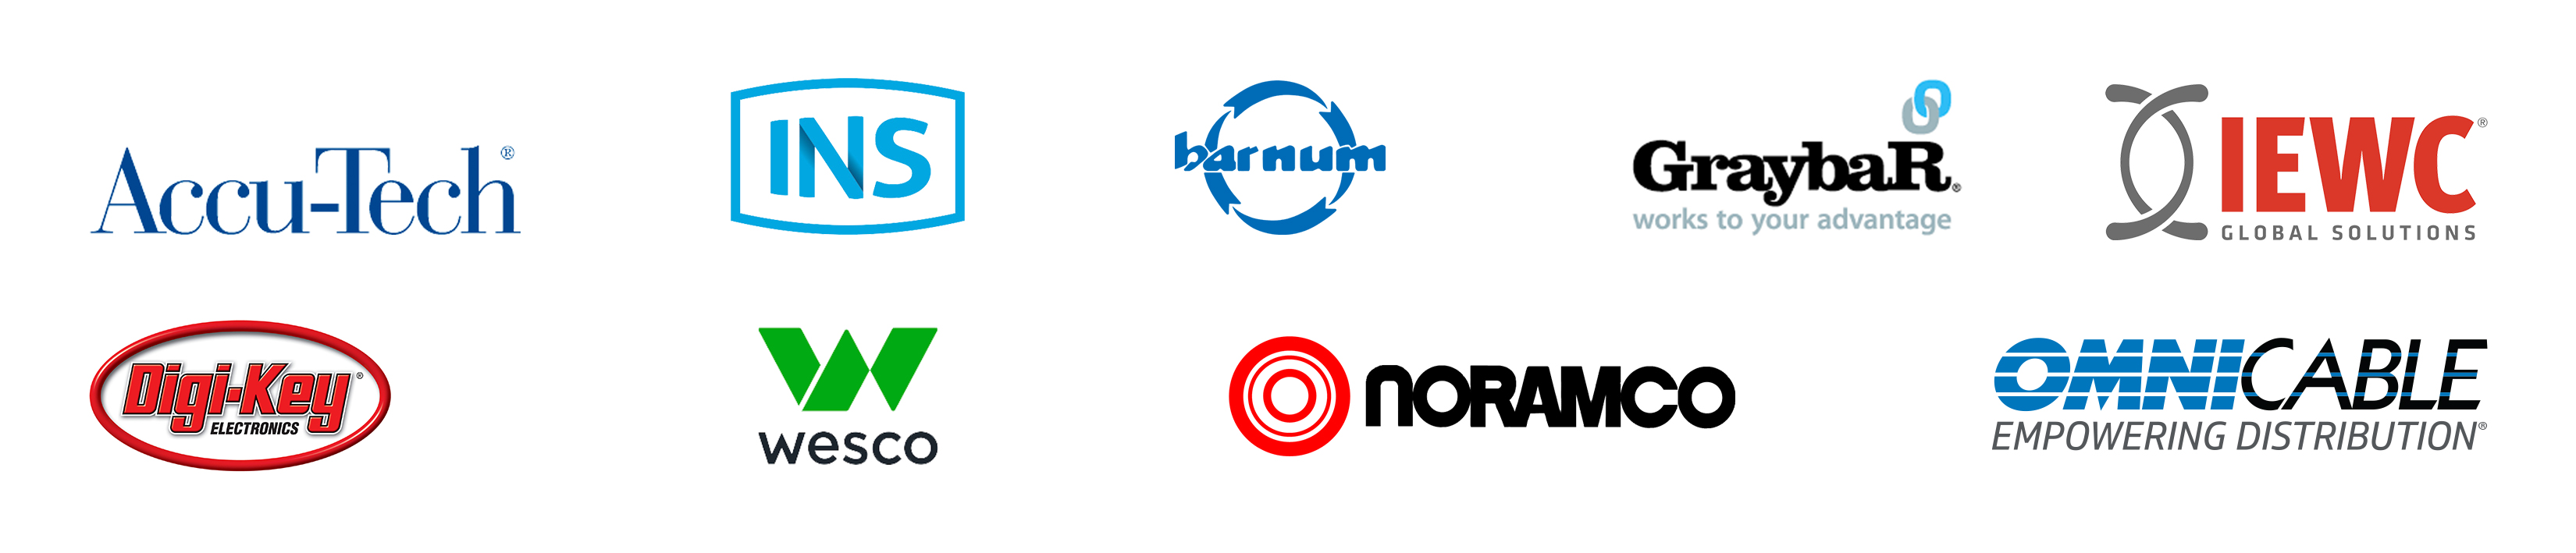 Logos pour Accu-Tech, INS, Barnum, Graybar, IEWC, Digi-Key, Wesco, Noramco et OmniCable